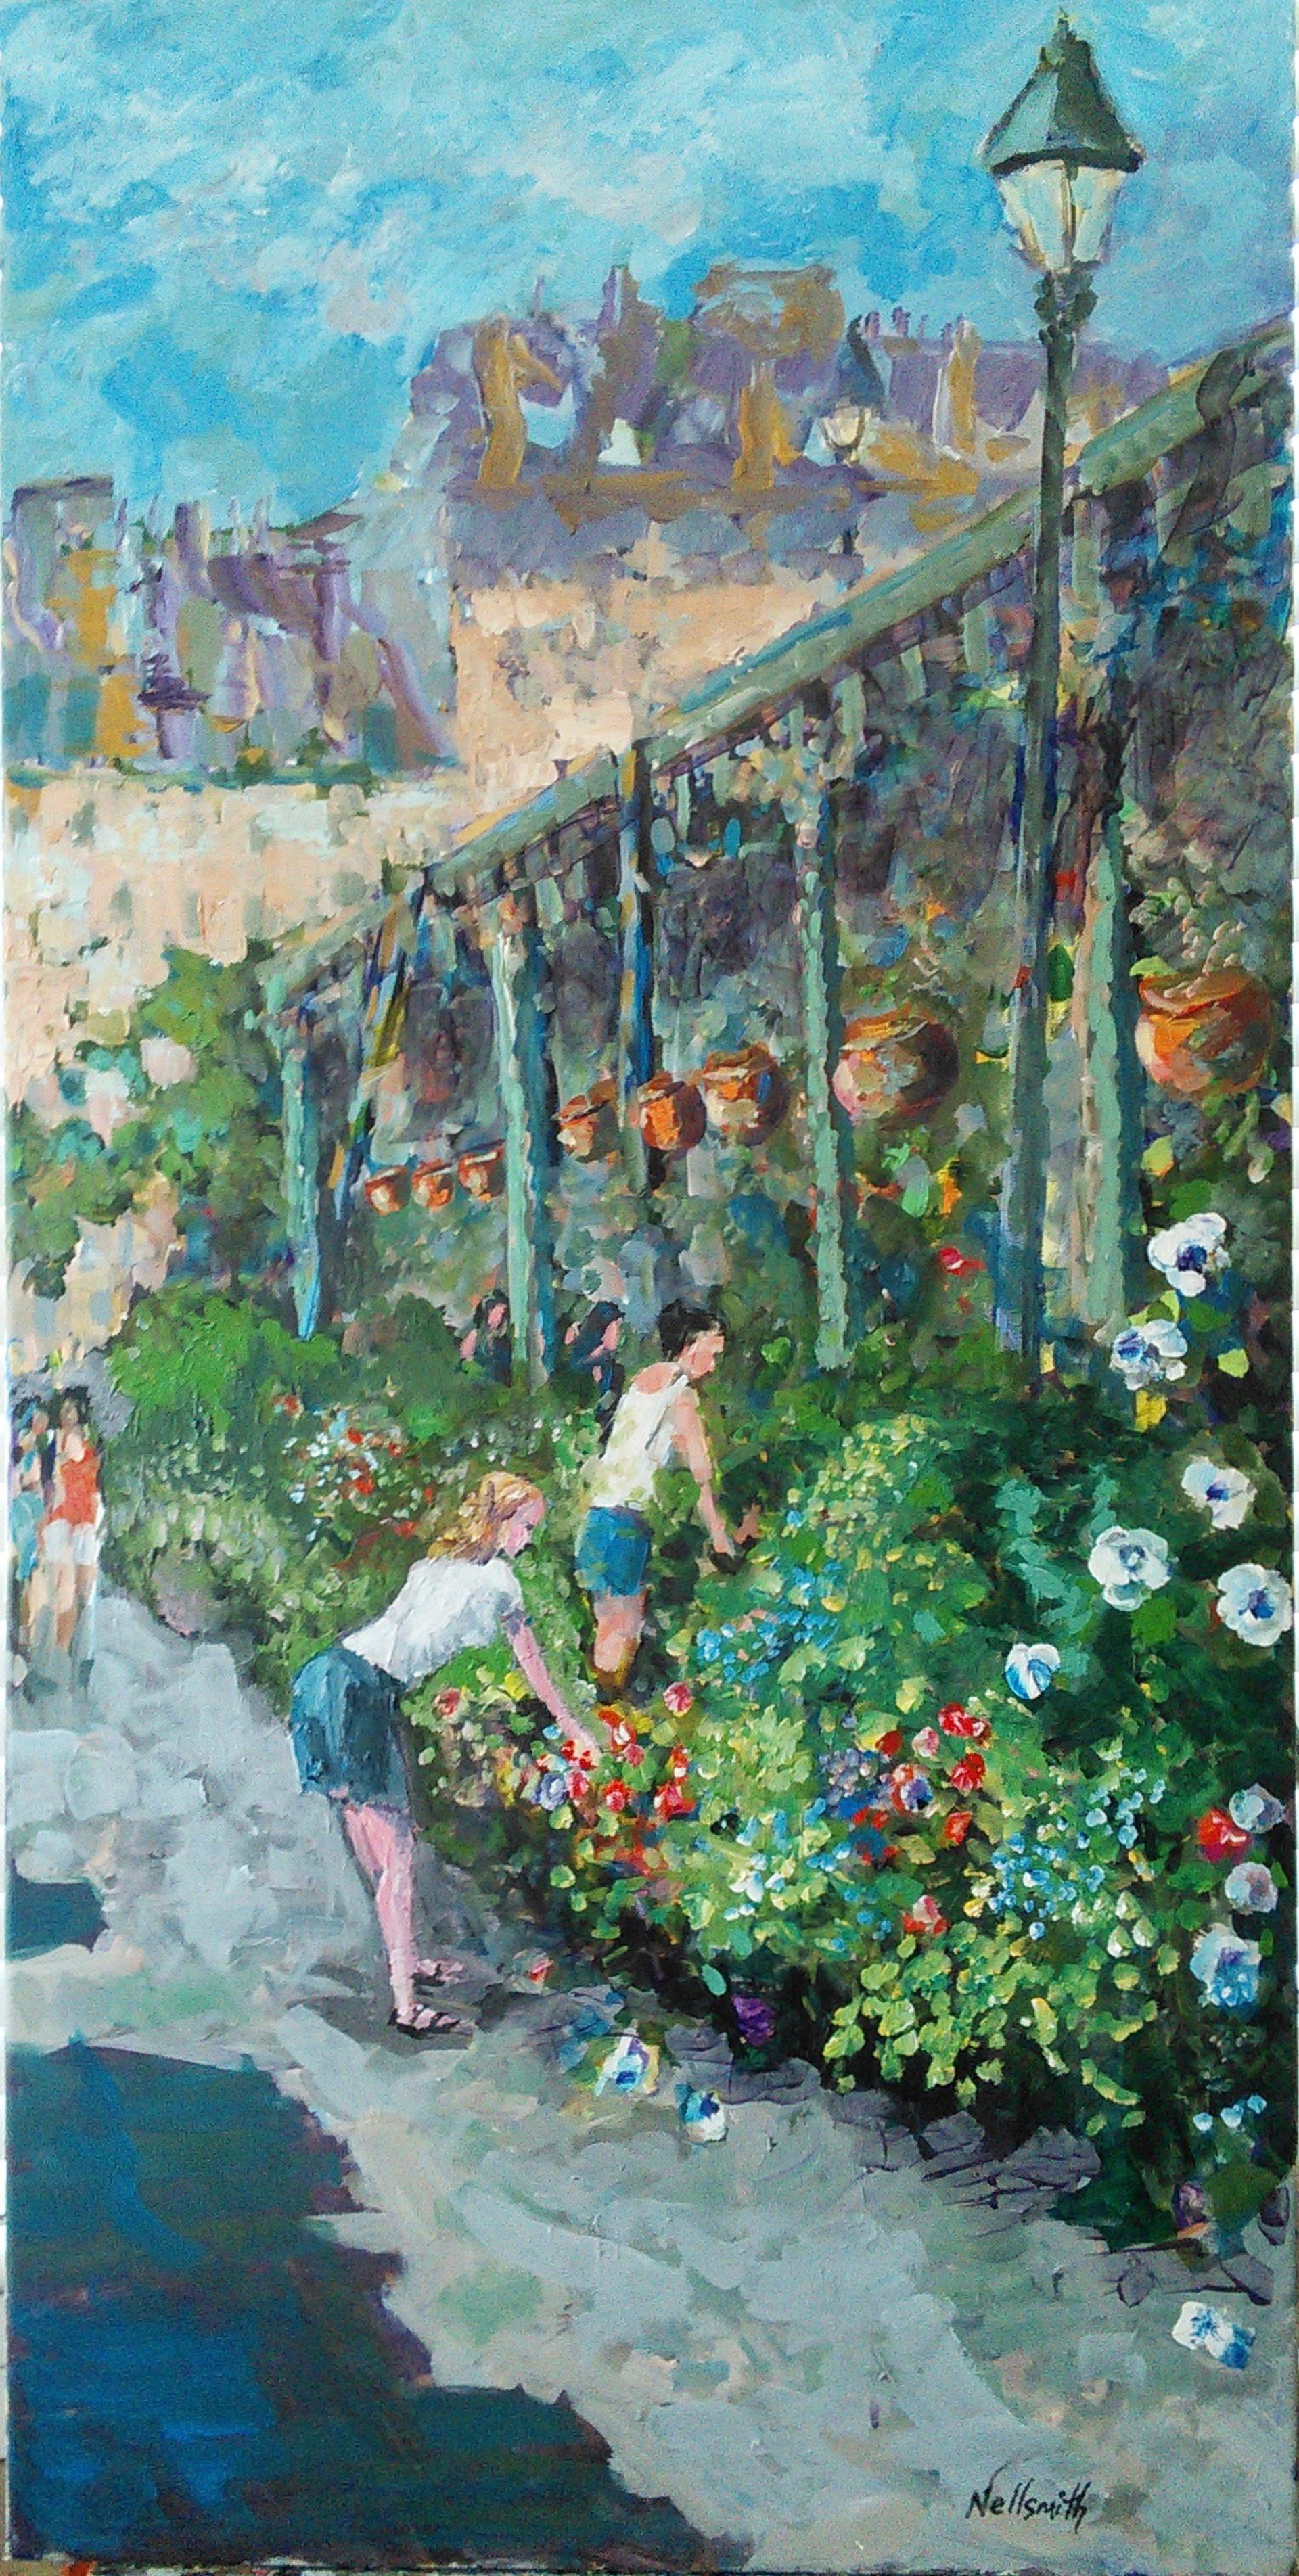 Marché aux Fleurs ( Paris Flower Market) by Bruce Nellsmith